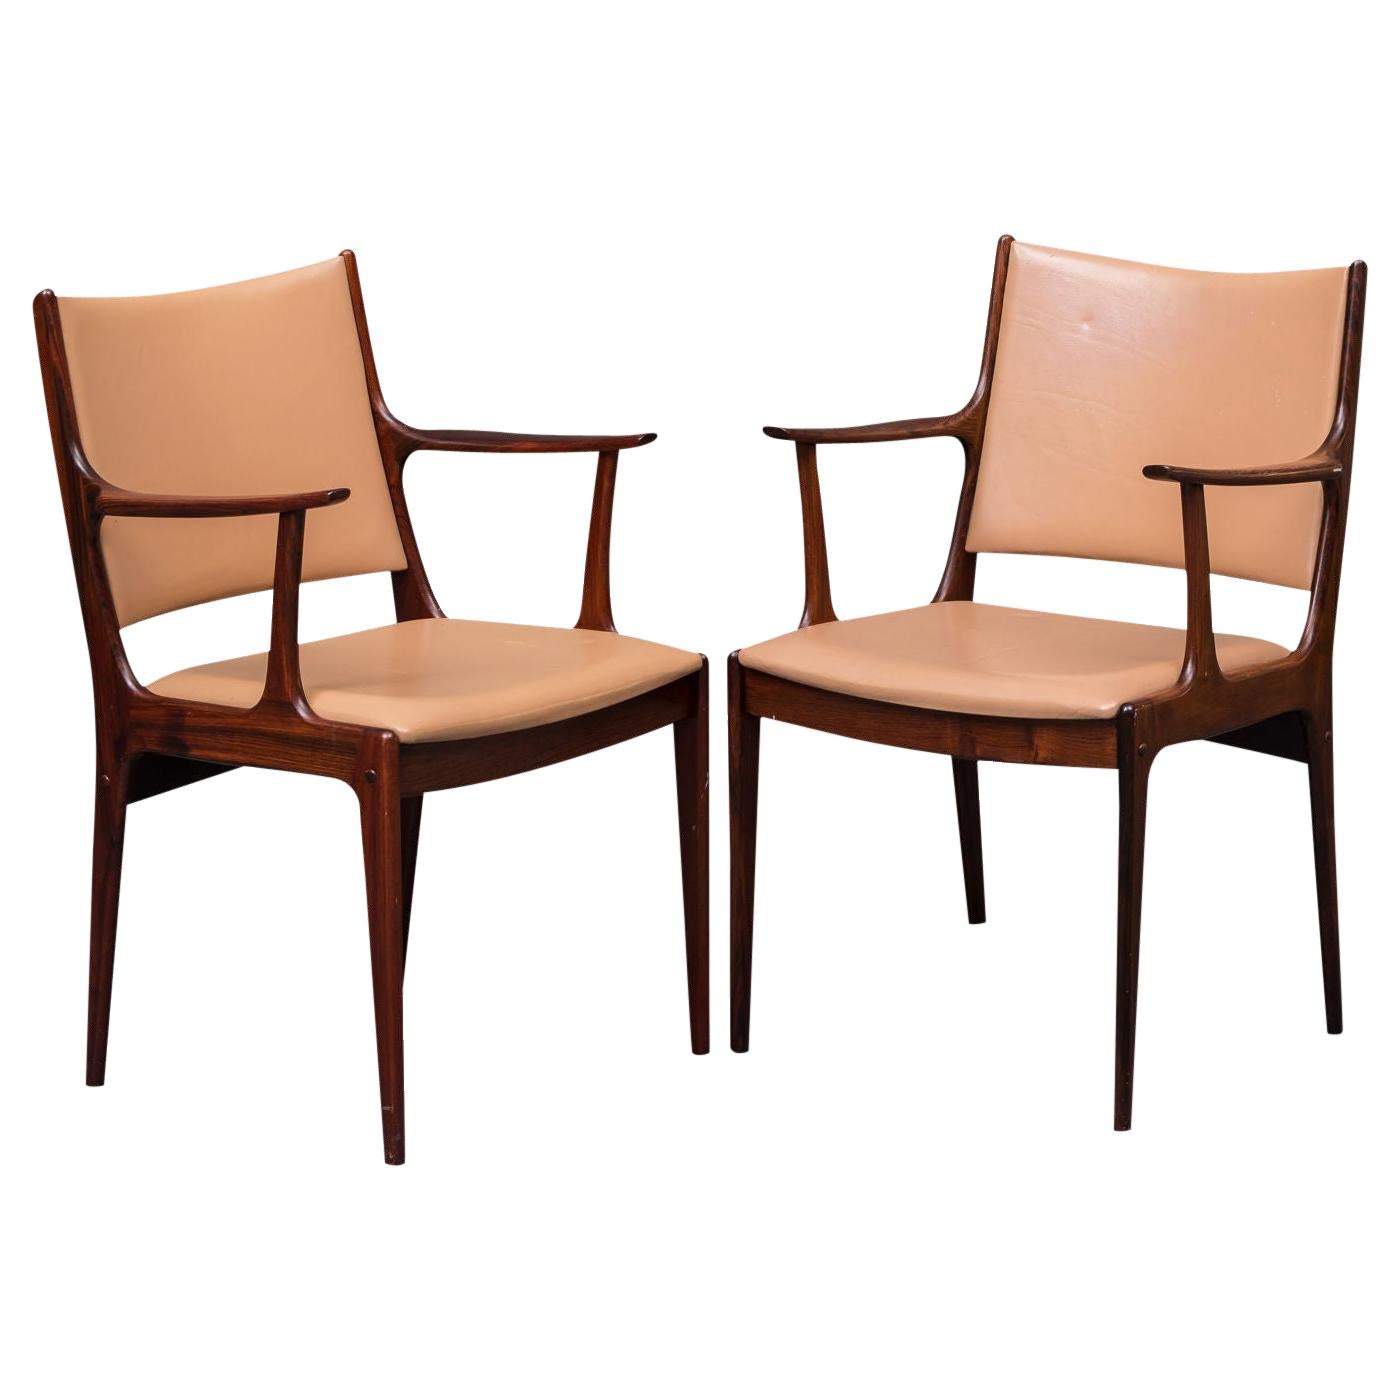 Deux fauteuils en bois de rose restaurés de Johannes Andersen, retapissés sur mesure, inclus